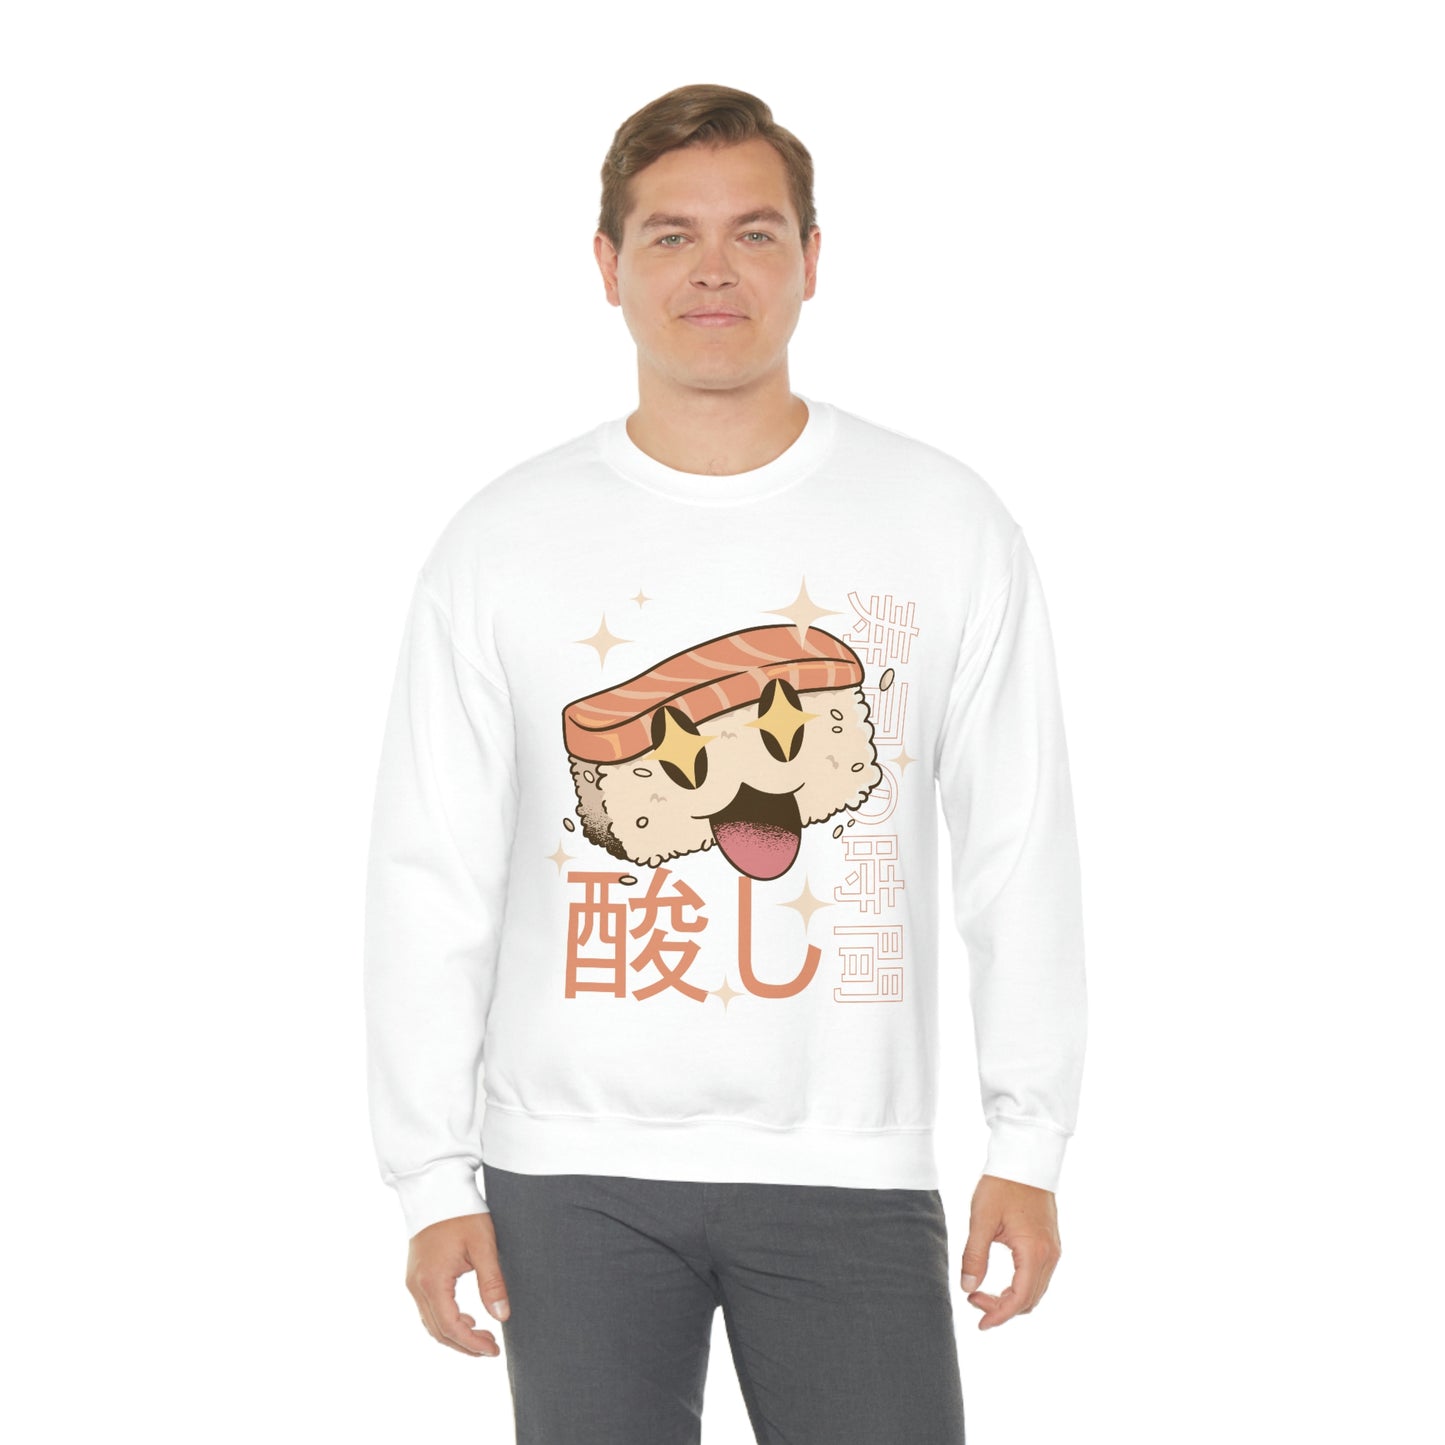 Kawaii Sweatshirt, Kawaii Clothing, Kawaii Clothes, Yami Kawaii Aesthetic, Pastel Kawaii Sweatshirt Sushi Sweater Sweatshirt